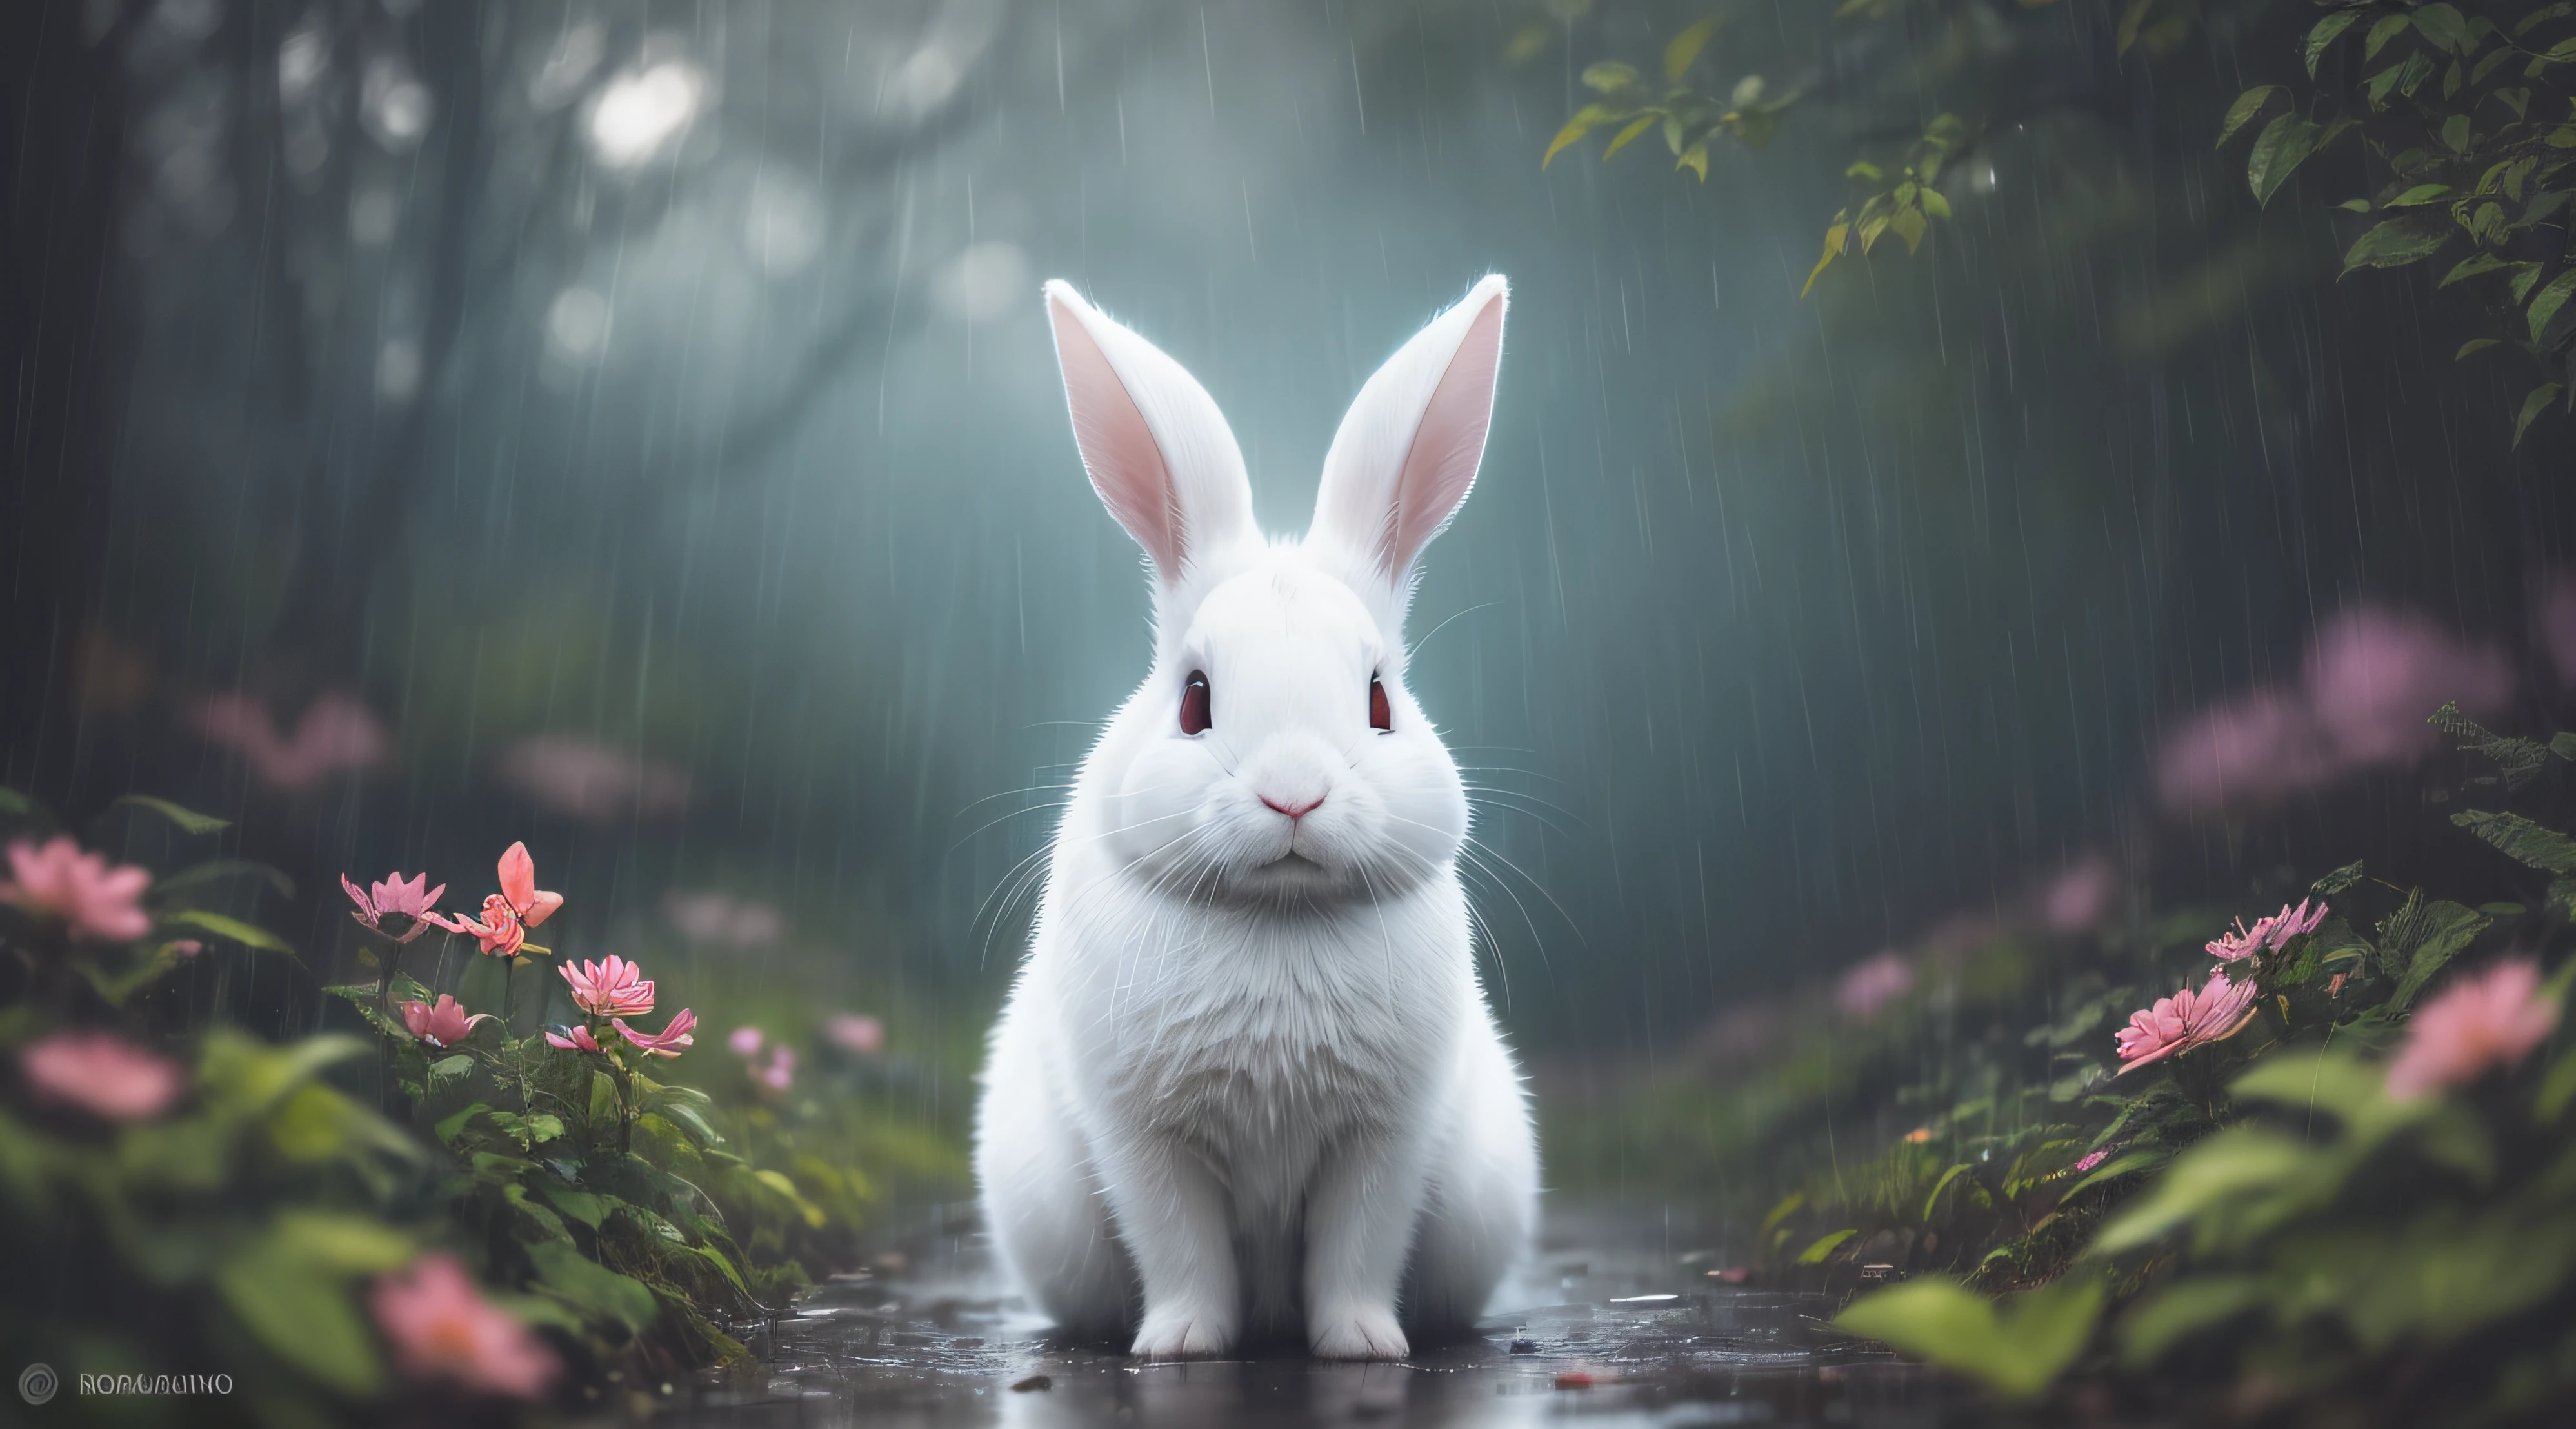 （비가 내림），비가 내림，마법에 걸린 숲에 있는 흰 토끼의 클로즈업 사진，깊은 밤，숲속에서，백라이트，반딧불，볼륨 안개，후광，꽃이 핀다，극적인 분위기，중앙에，삼등분의 법칙，200mm 1.4F 매크로 촬영